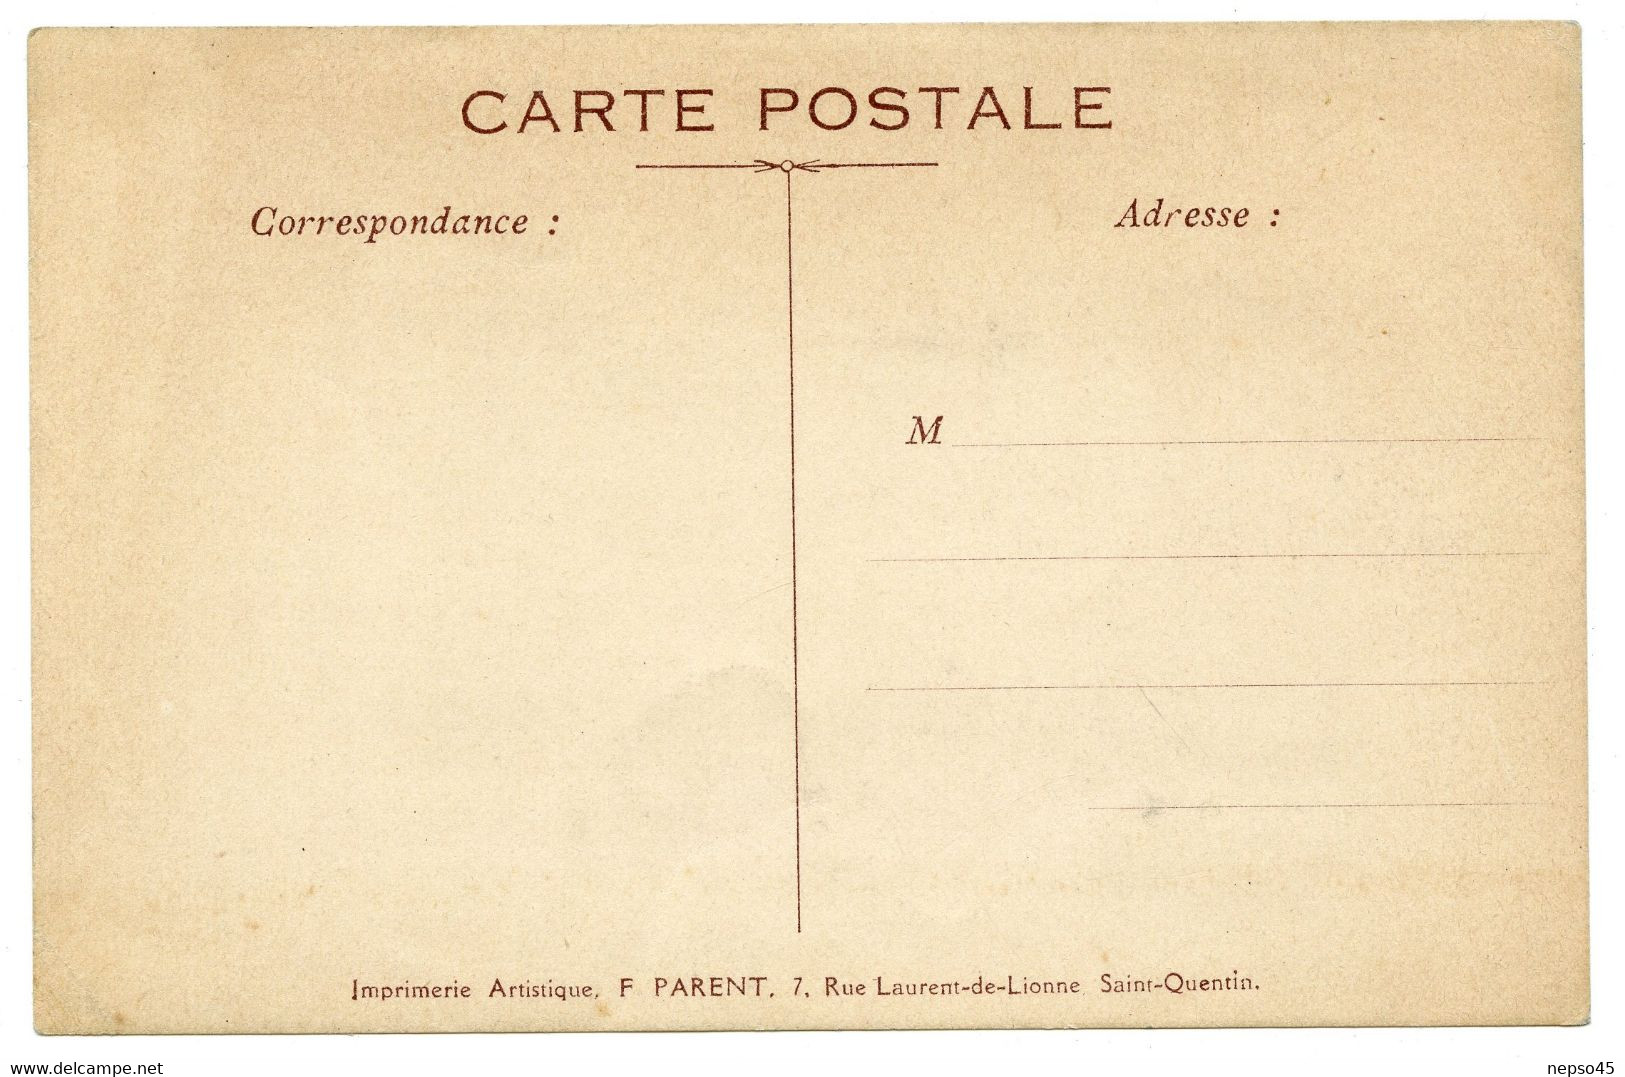 Carillonneur Gustave Cantelon.Saint-Quentin.souvenir Des Fêtes Du Carillon Juin 1924.sonnerie Sanche Réglée Par Cantelon - Inaugurations